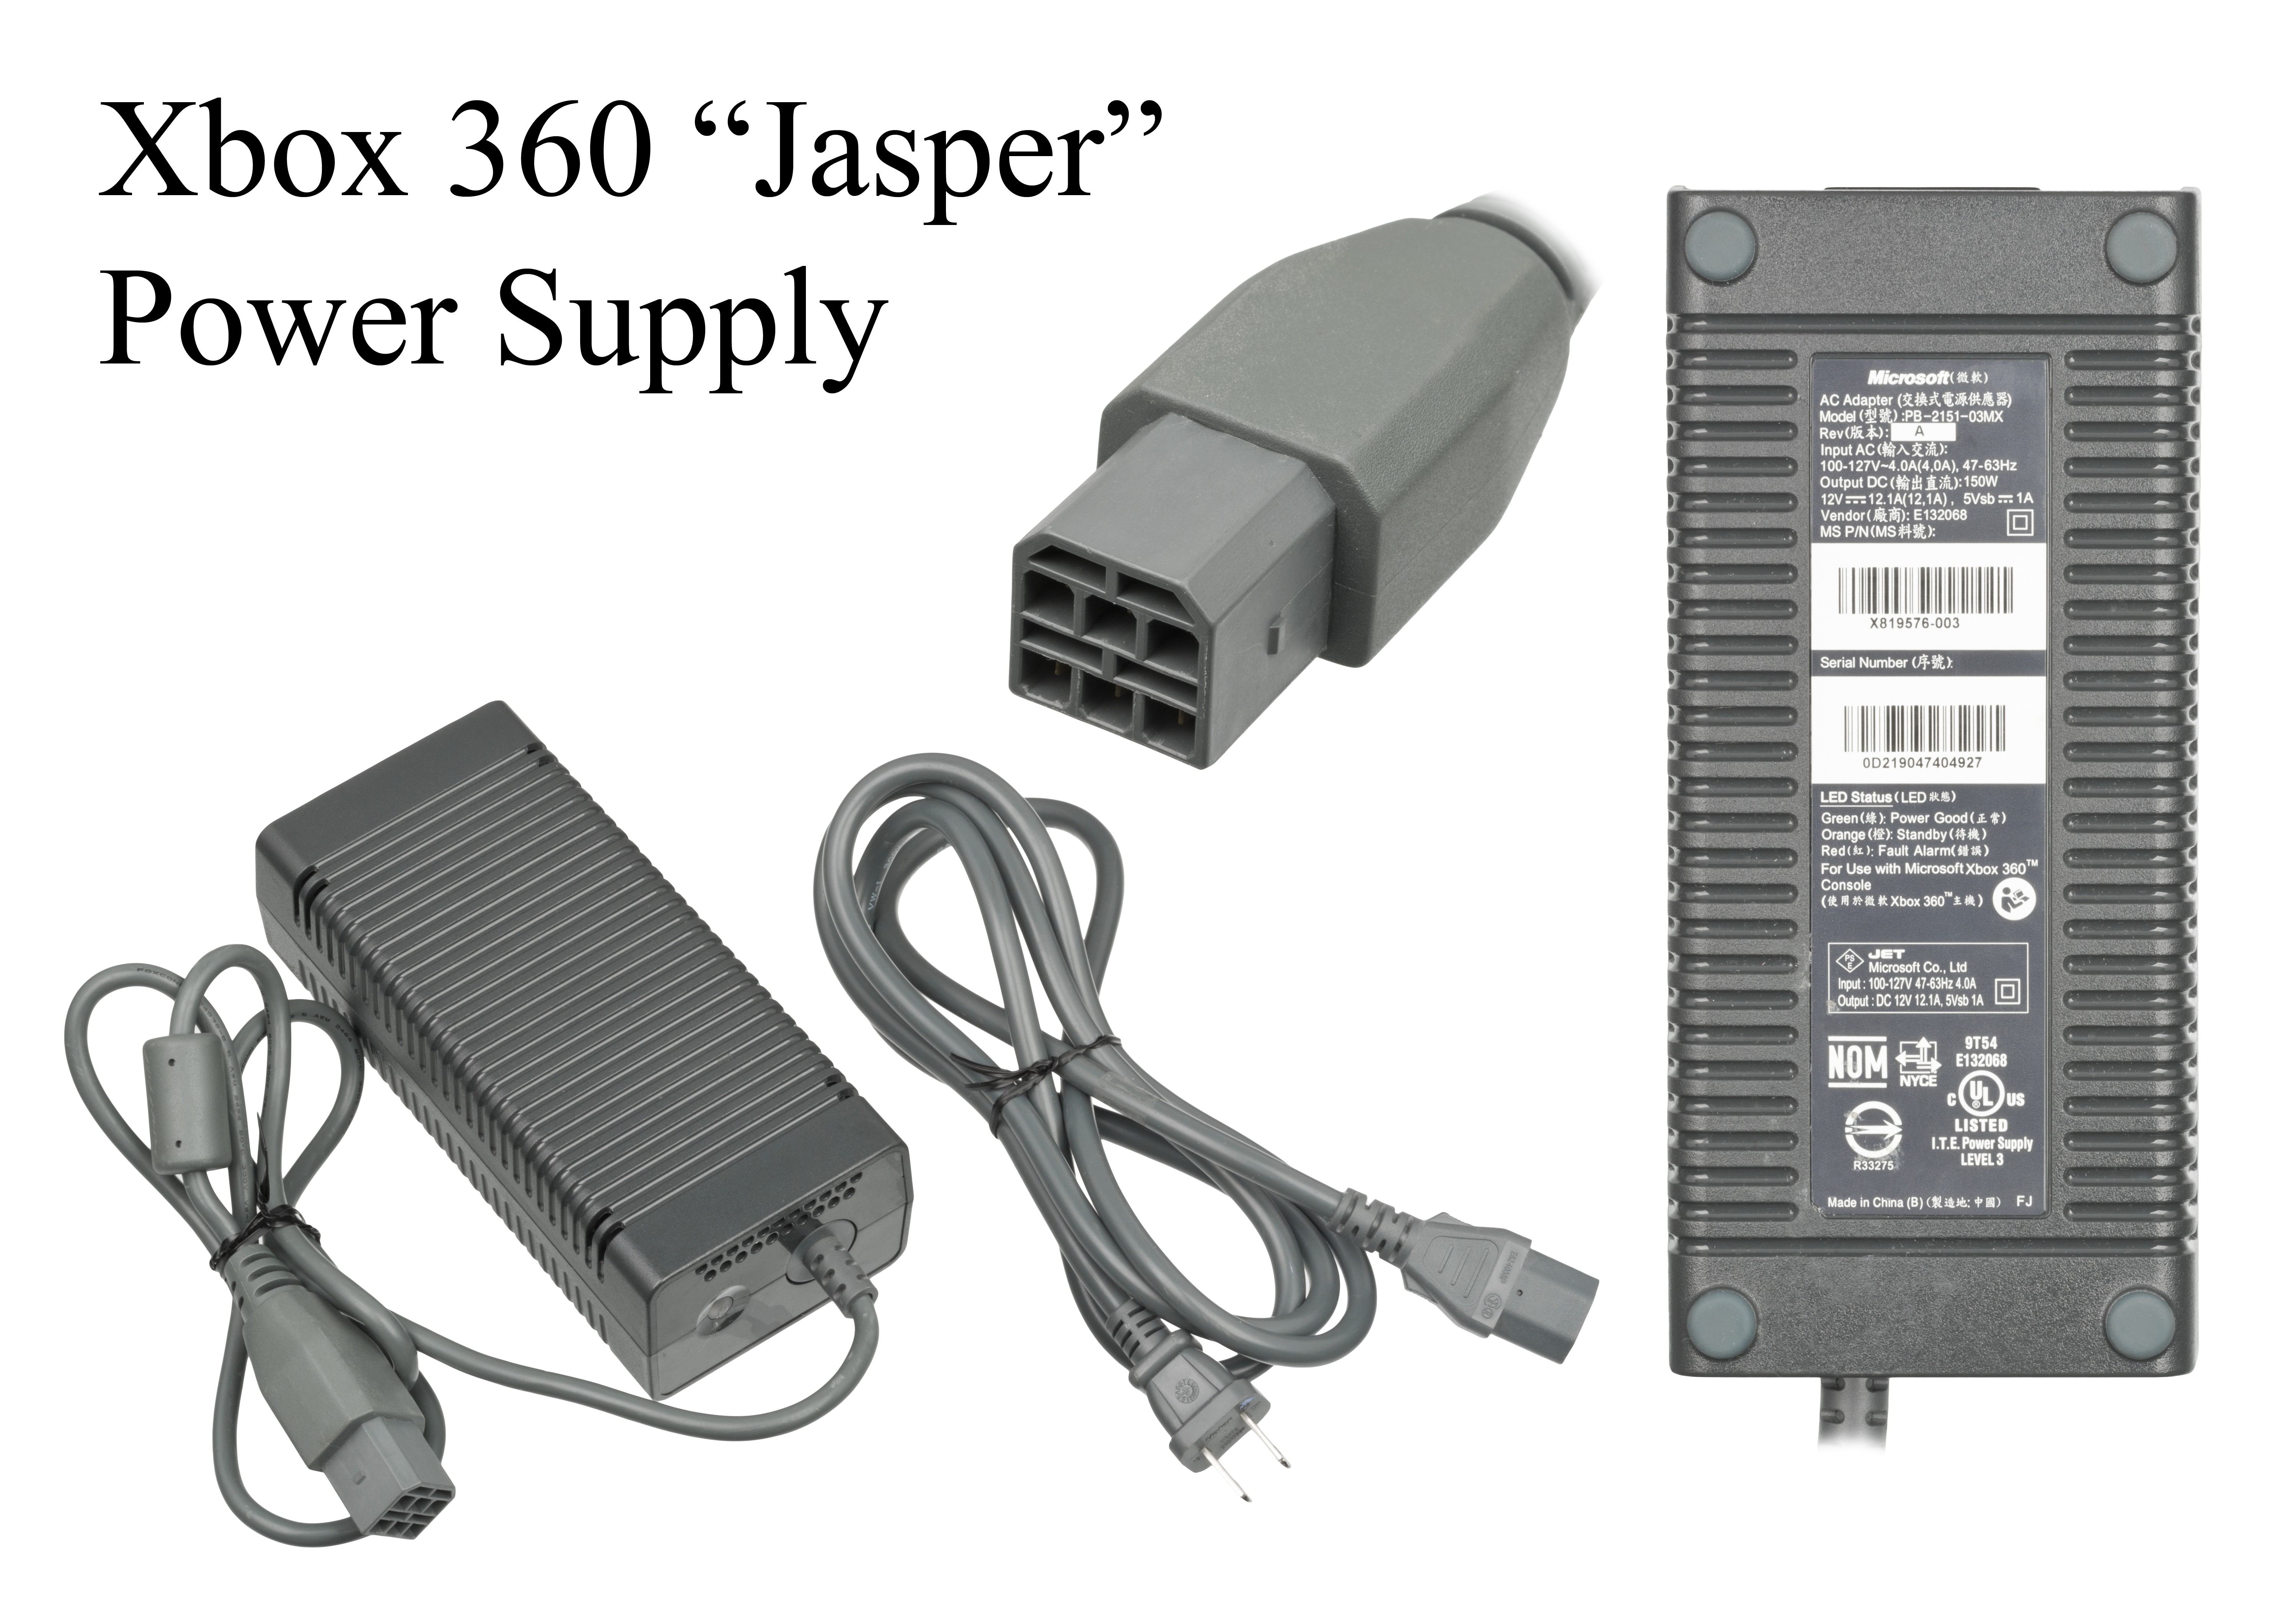 Xbox 360 Power Supply Grey Wire File Microsoft Xbox 360 Power Supply Jasper Wikimedia